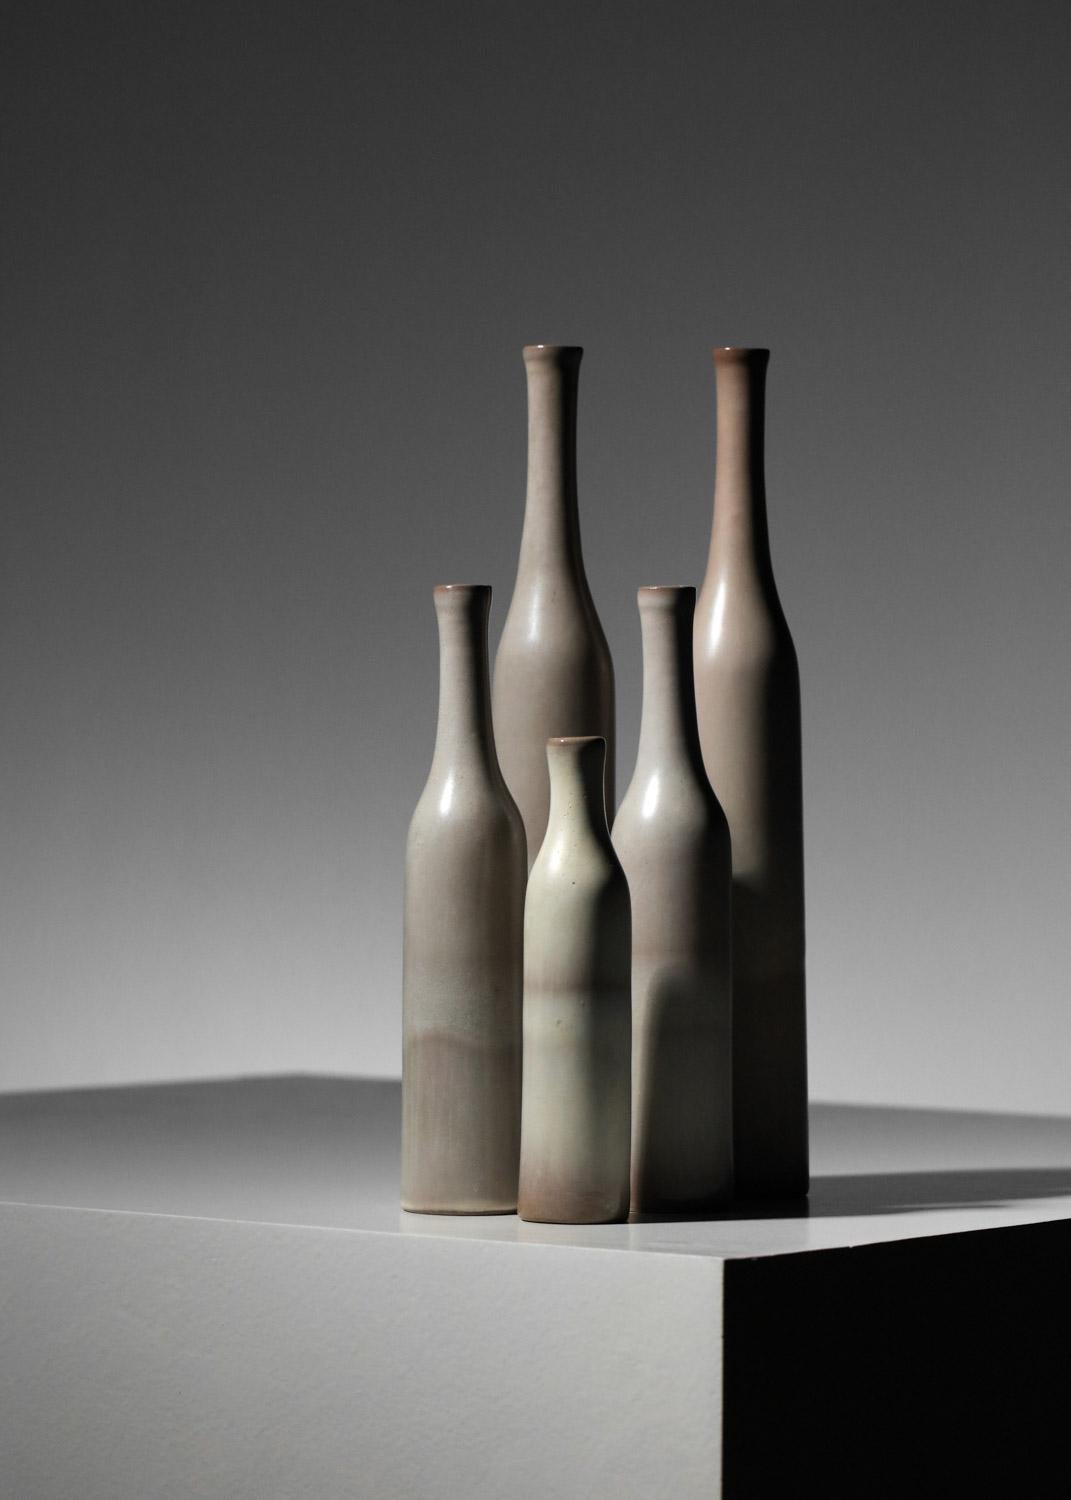 Sehr schöner Satz keramischer Soliflores-Vasen von den berühmten französischen Künstlern Jacques und Danièle Ruelland. Das Set besteht aus 5 emaillierten Vasen in verschiedenen Grautönen. Sehr guter Vintage-Zustand (siehe Fotos). Signatur unter den